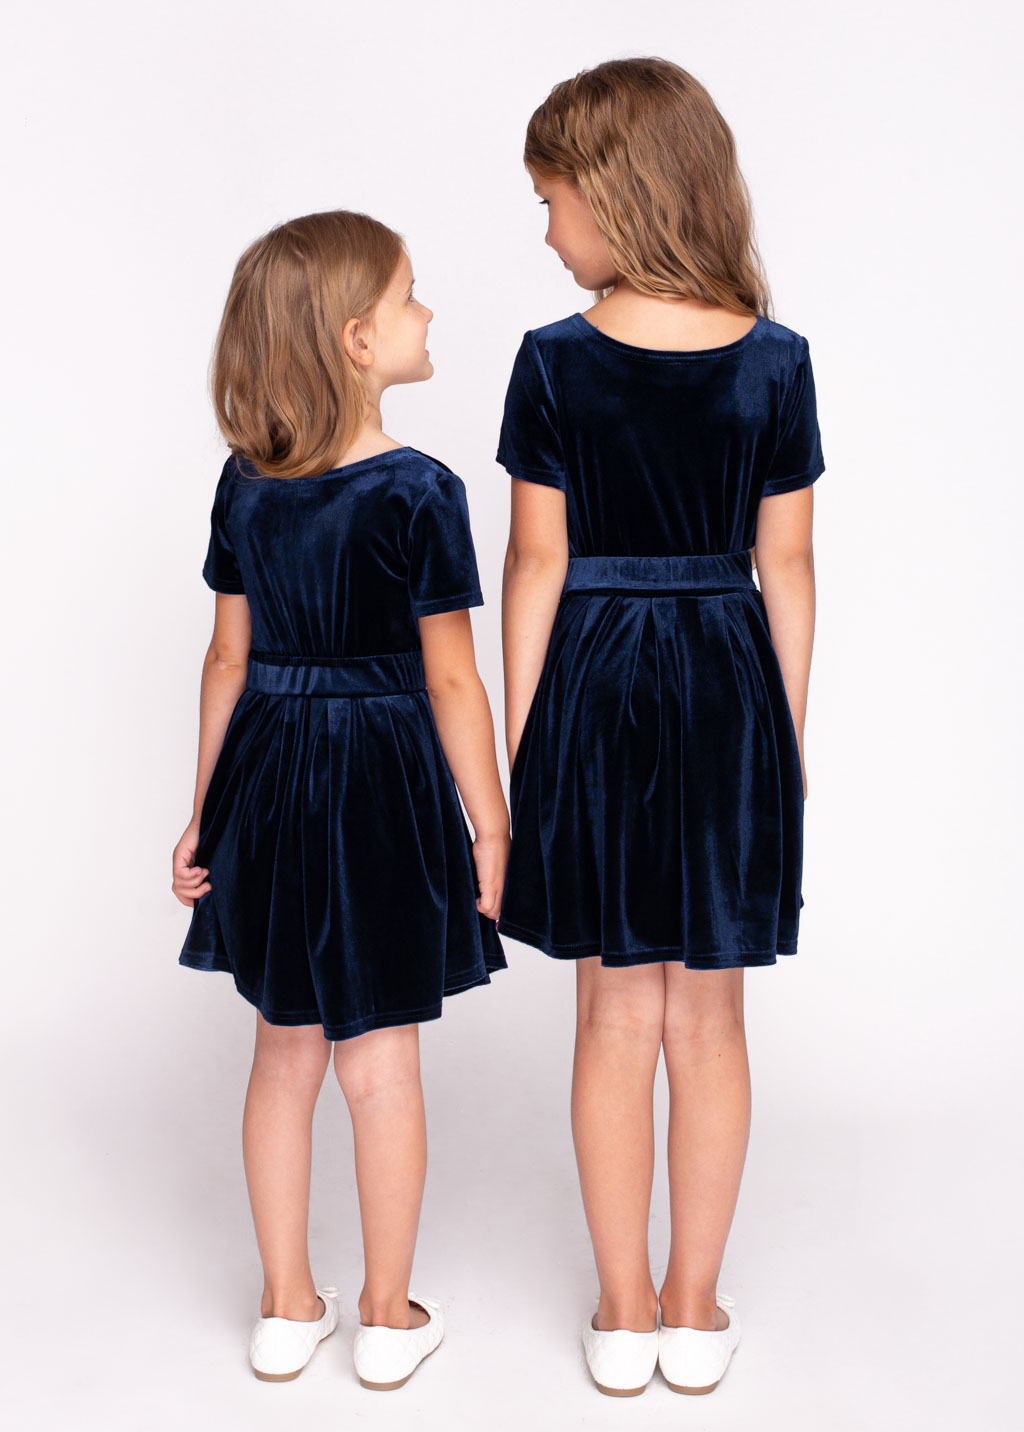 Mommy and me navy blue velvet dresses